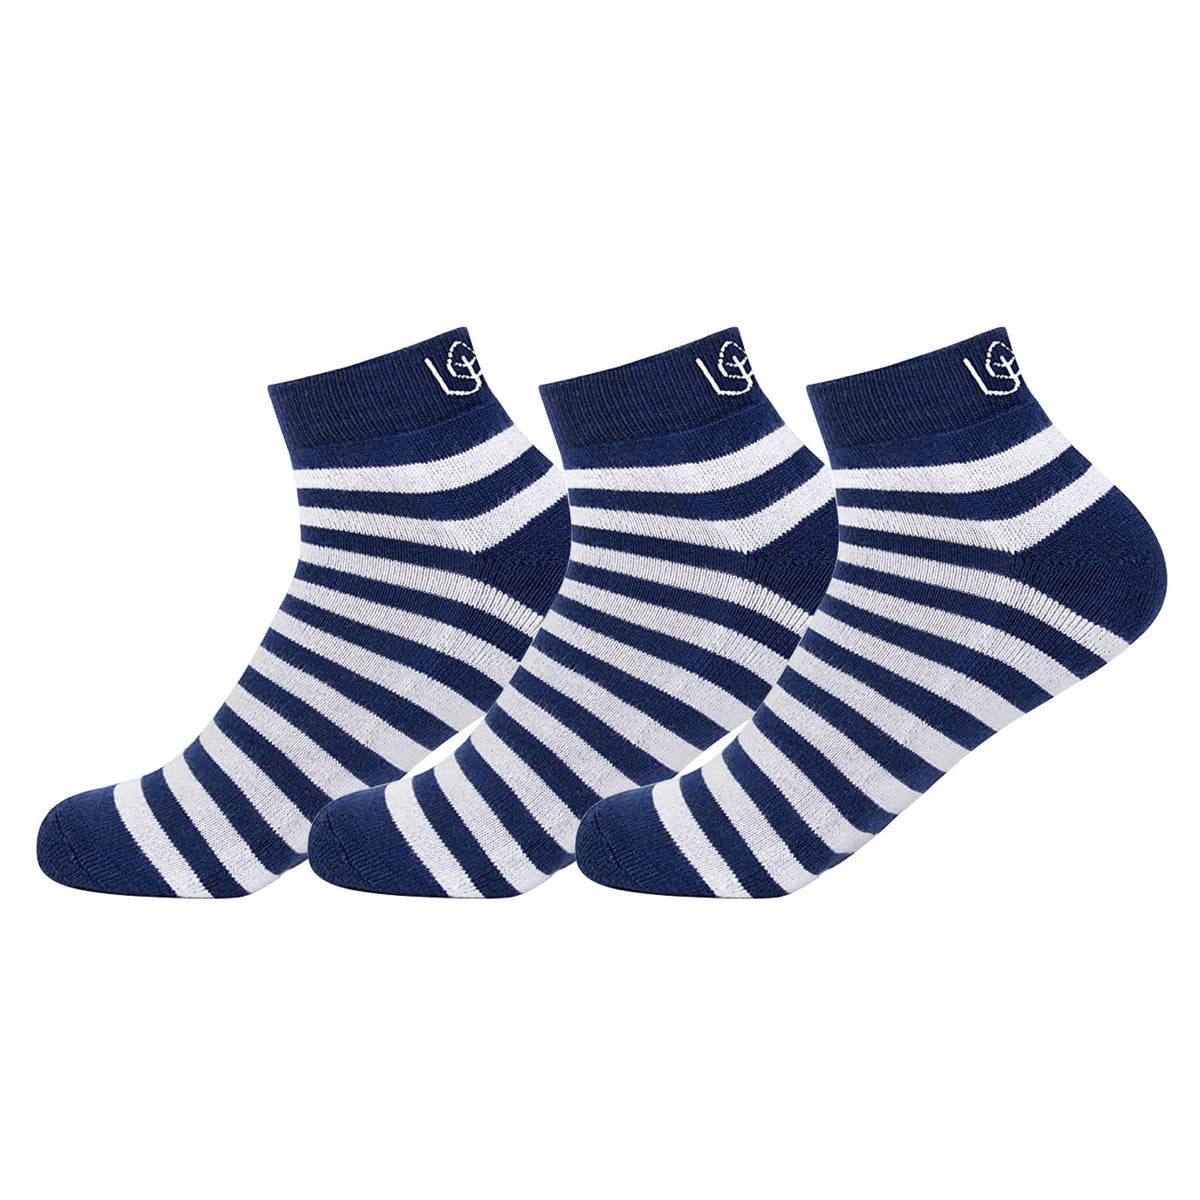 Mush Bamboo Socks for Men & Women - Ultra Soft, Breathable, Ankle socks for running, exercise & sports Pack of 3